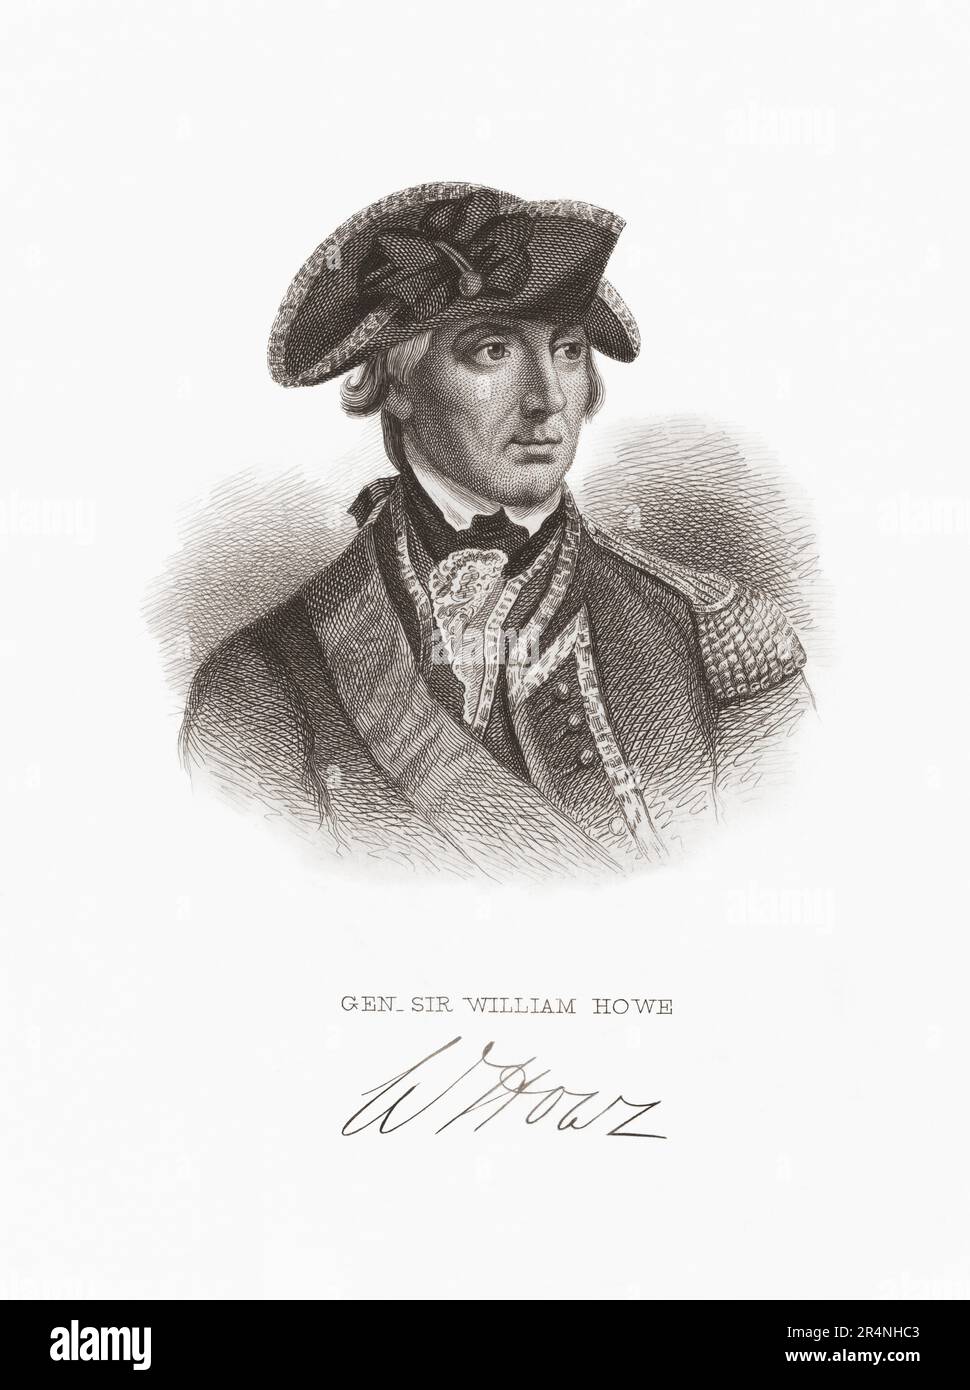 William Howe, 5th Visconte Howe, 1729 – 1814. Ufficiale dell'esercito britannico. Howe era il comandante in capo delle forze terrestri britanniche nelle colonie durante la guerra di indipendenza americana. Dopo un ritratto del 18th° secolo. Foto Stock